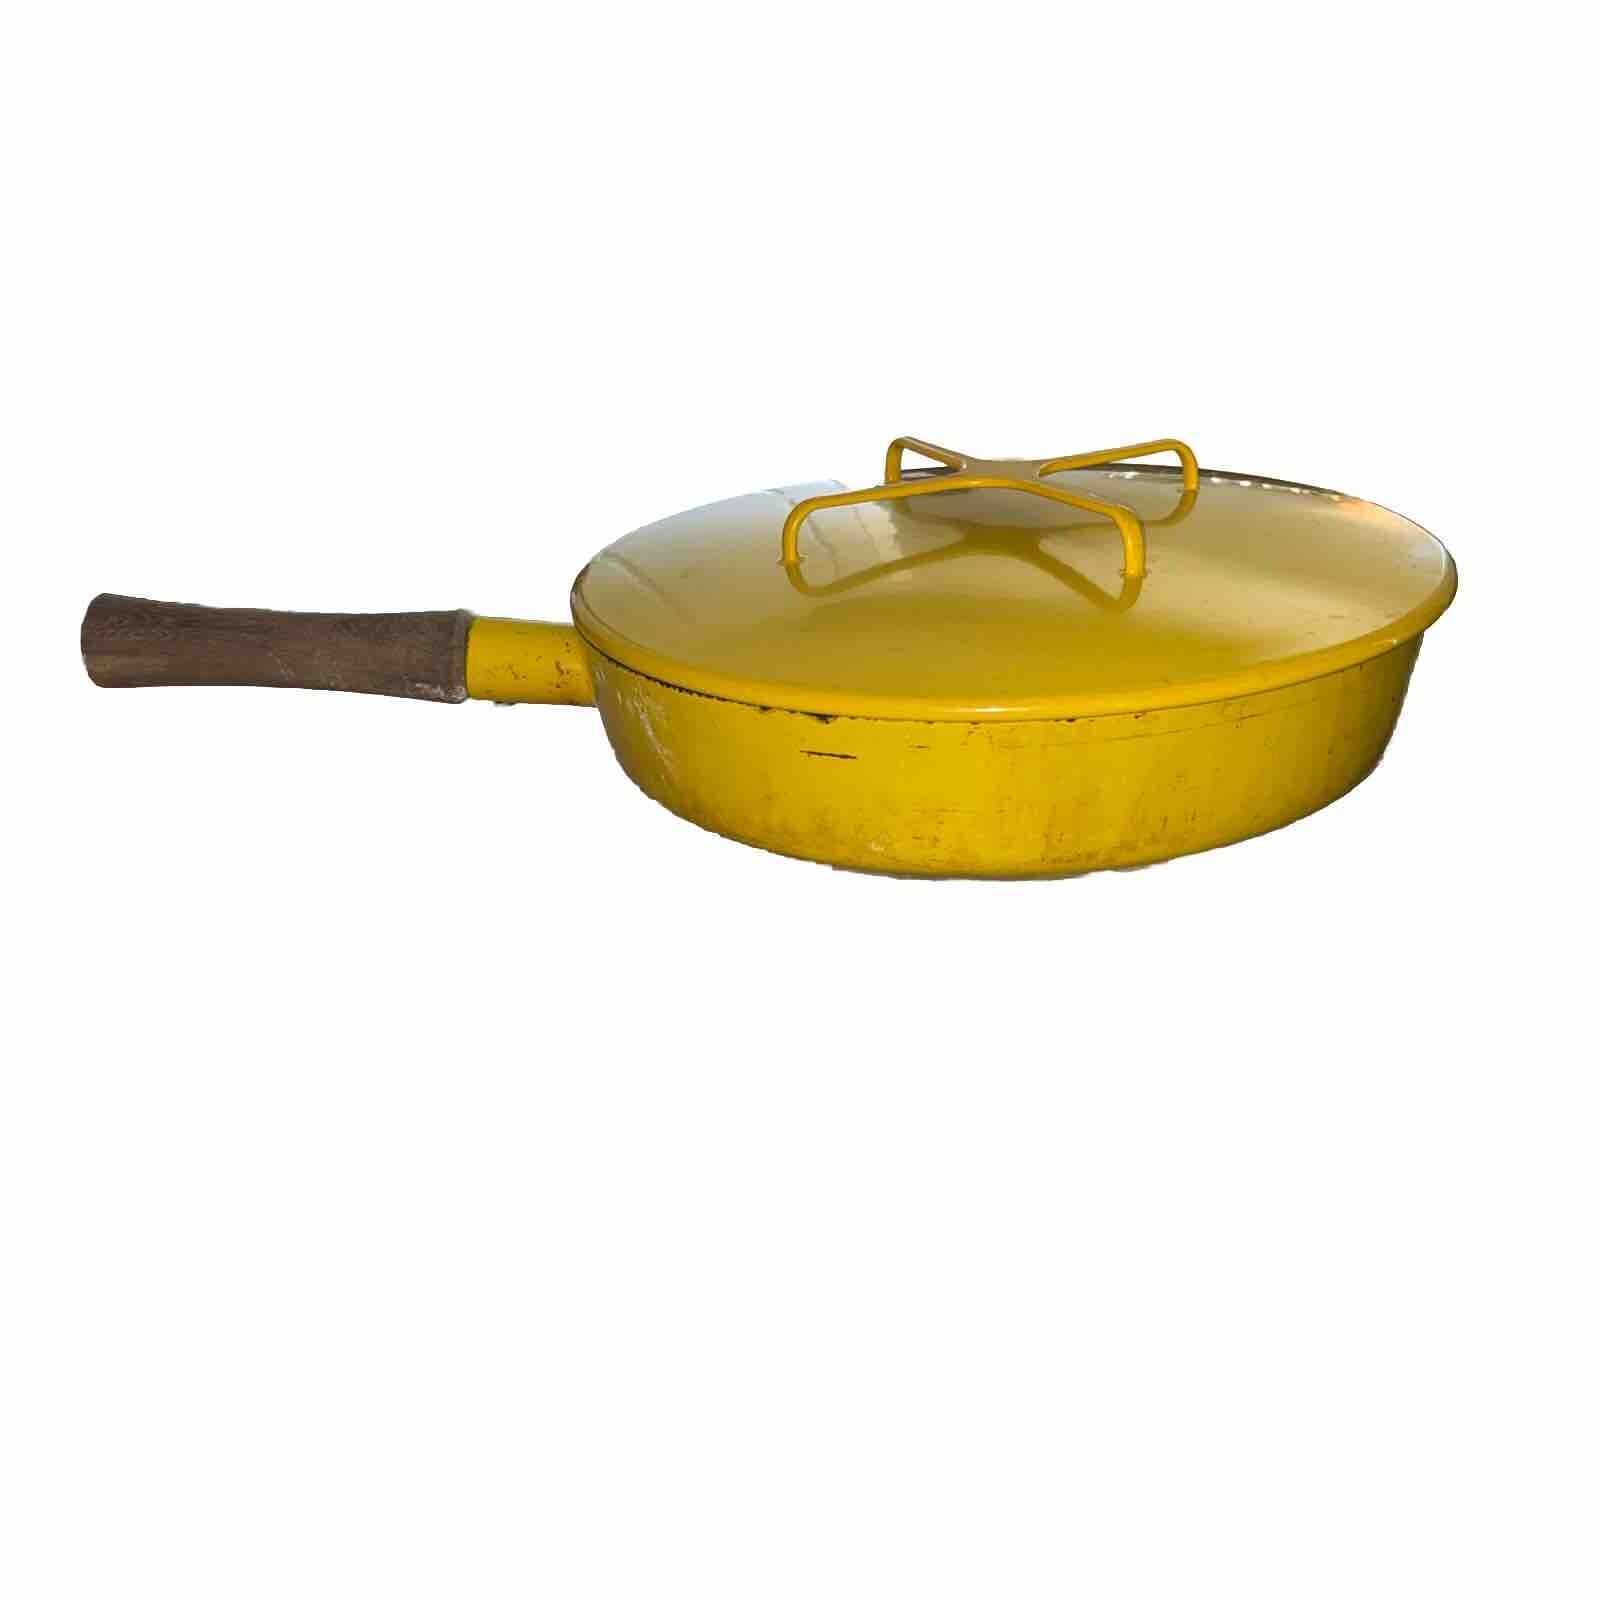 Dansk Kobenstyle Yellow Enamel Skillet Pan Wood Handle Quistgaard Lid Vintage